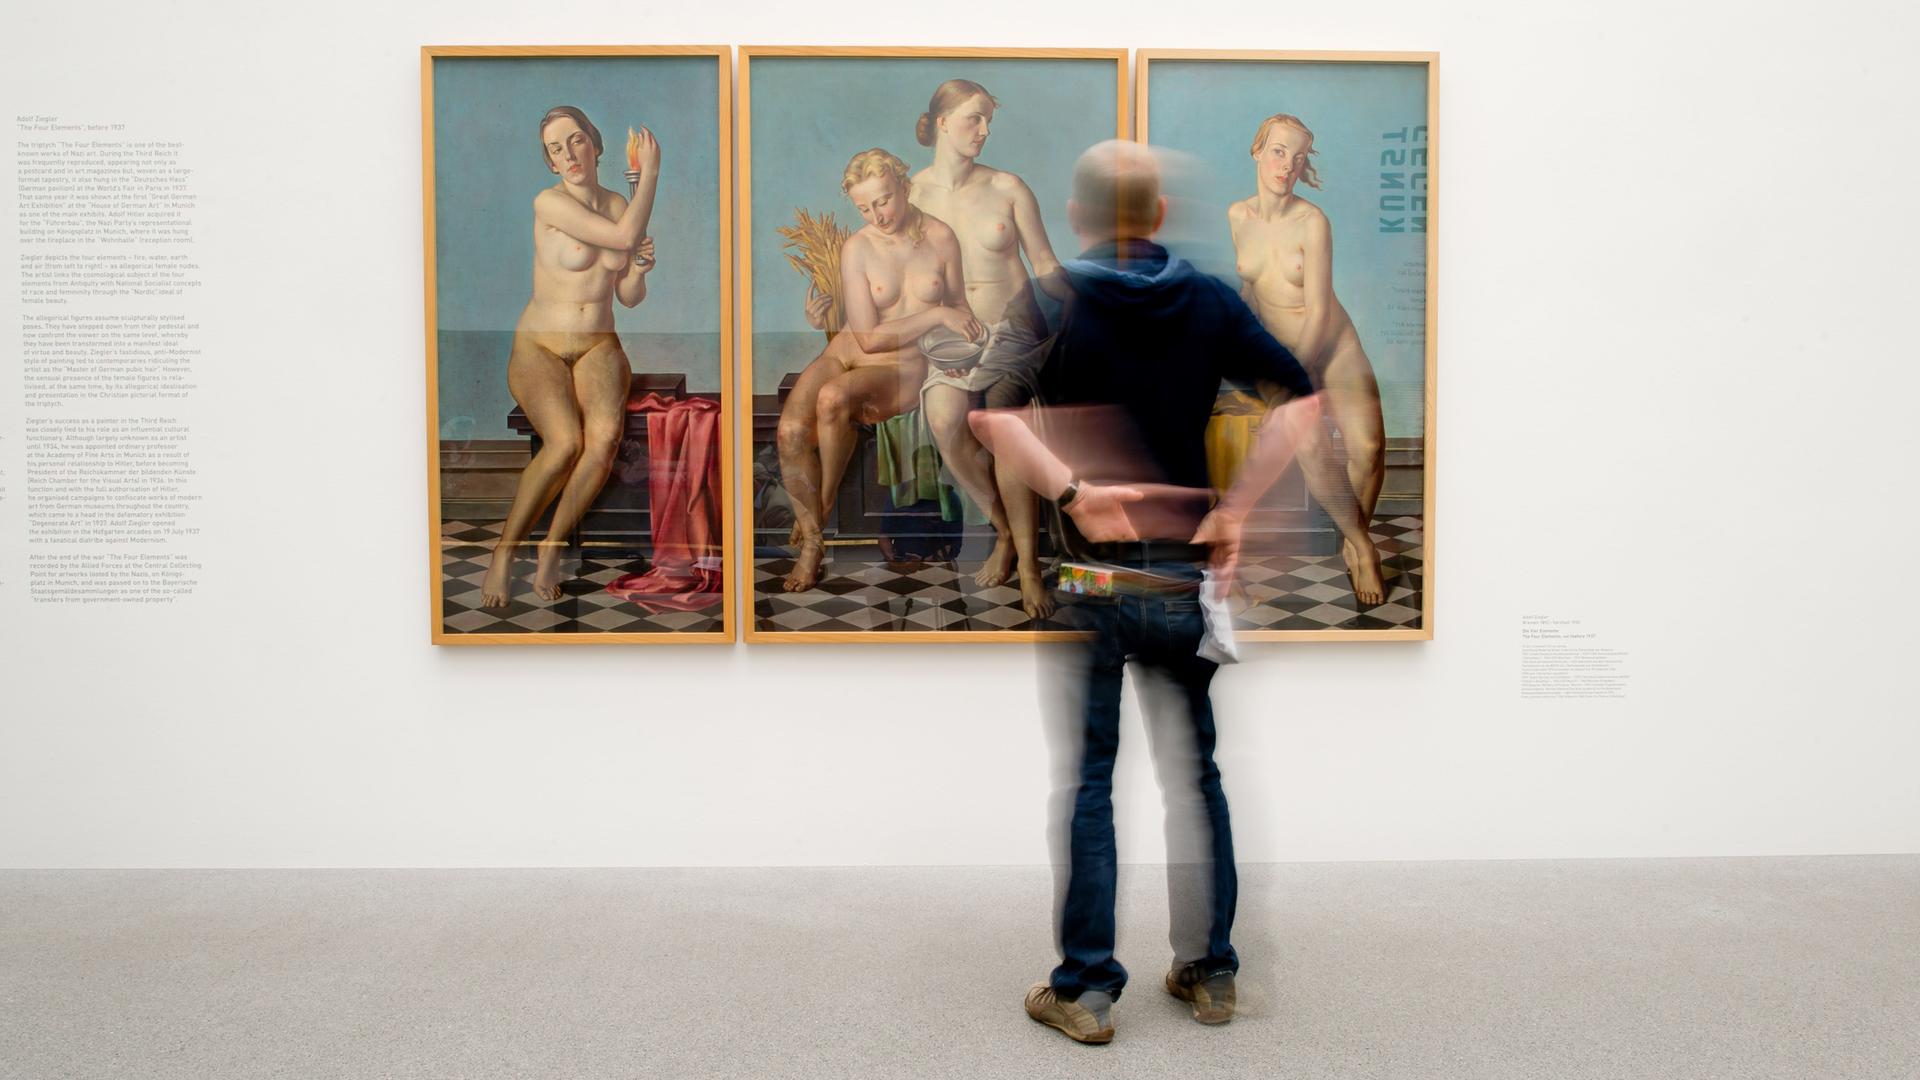 Dreiteiliges Werk mit nackten blonden Frauen auf blauem Hintergrund - "Die Vier Elemente" von Adolf Ziegler (1892-1959) in der Pinakothek der Moderne